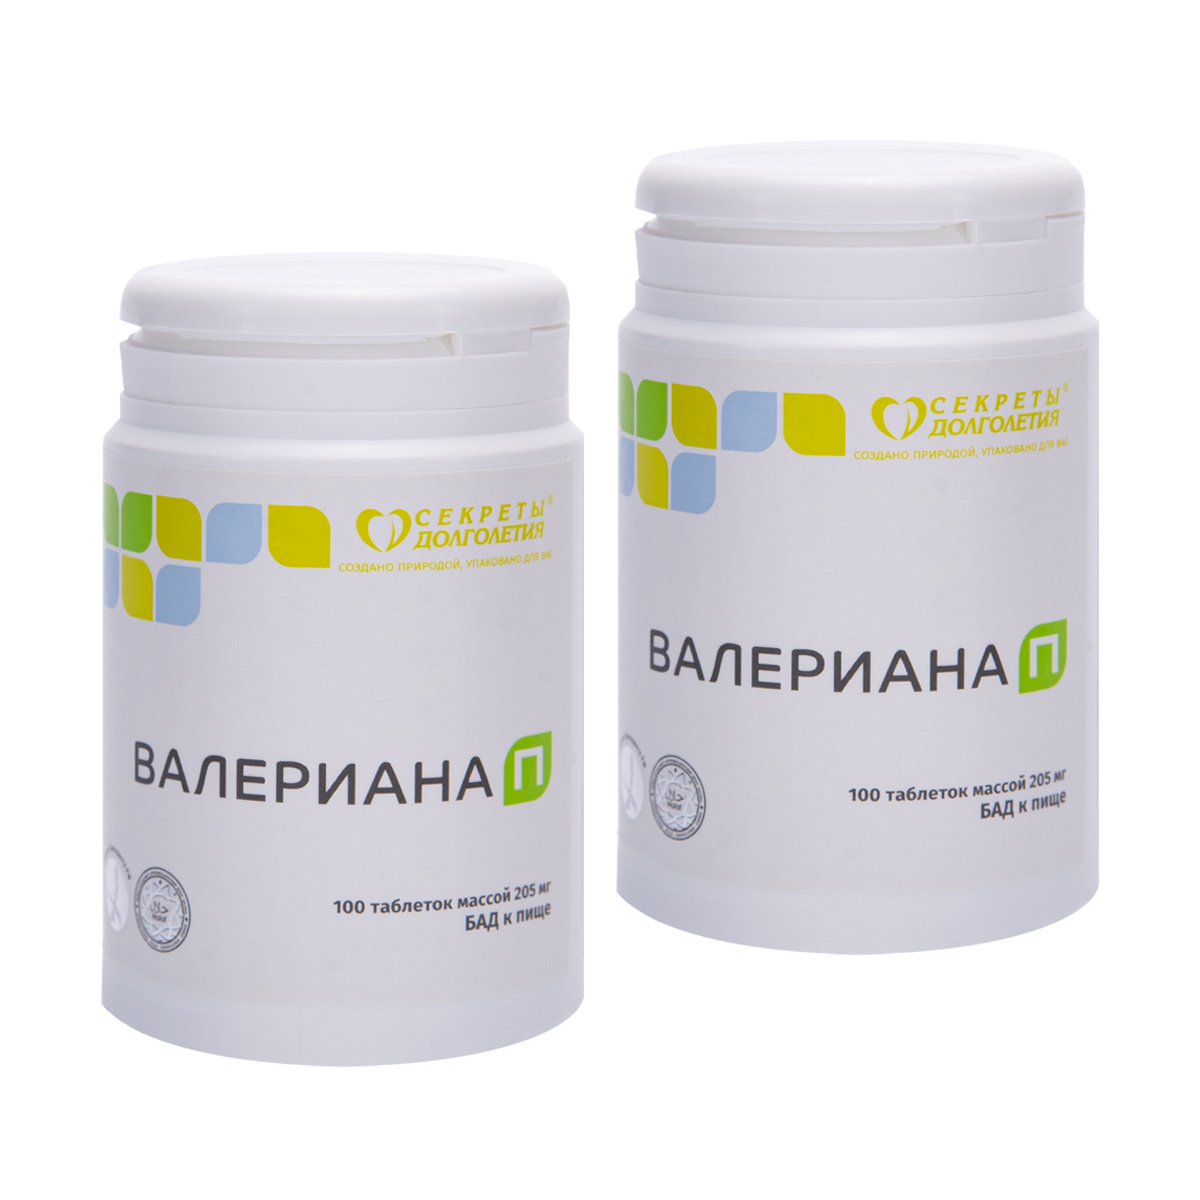 Валериана-П «Парафарм», натуральное успокоительное и снотворное средство, таблетки (2 уп. по 100 шт.)